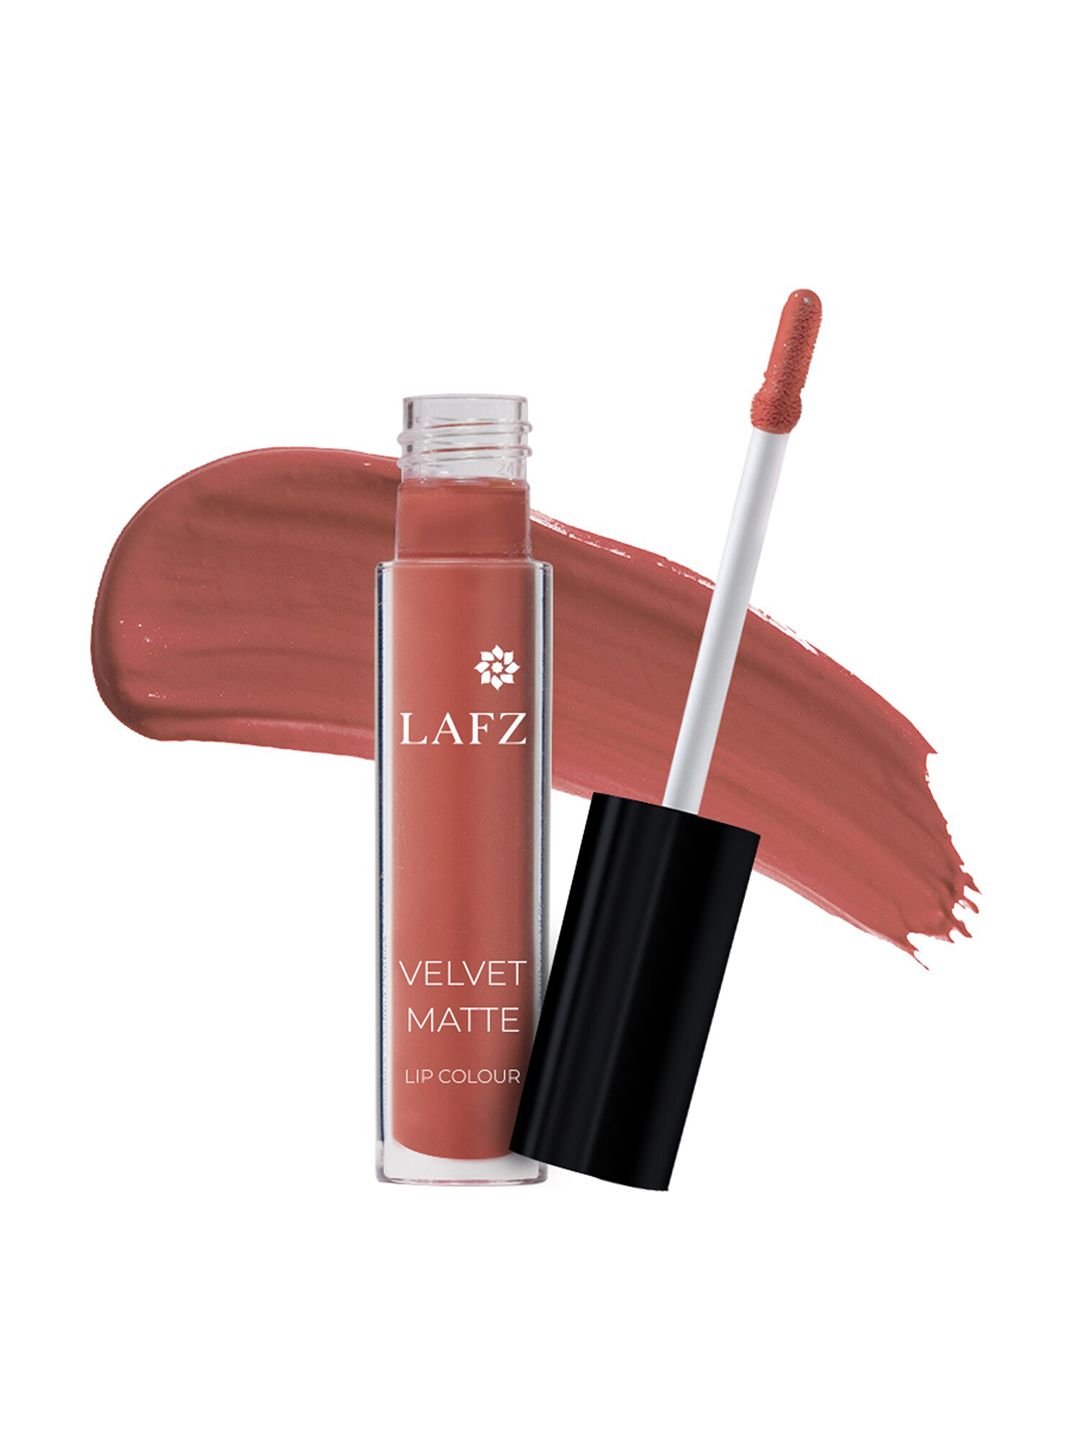 LAFZ Velvet Matte Lip Color - Peach Cream 5.5 ml Price in India